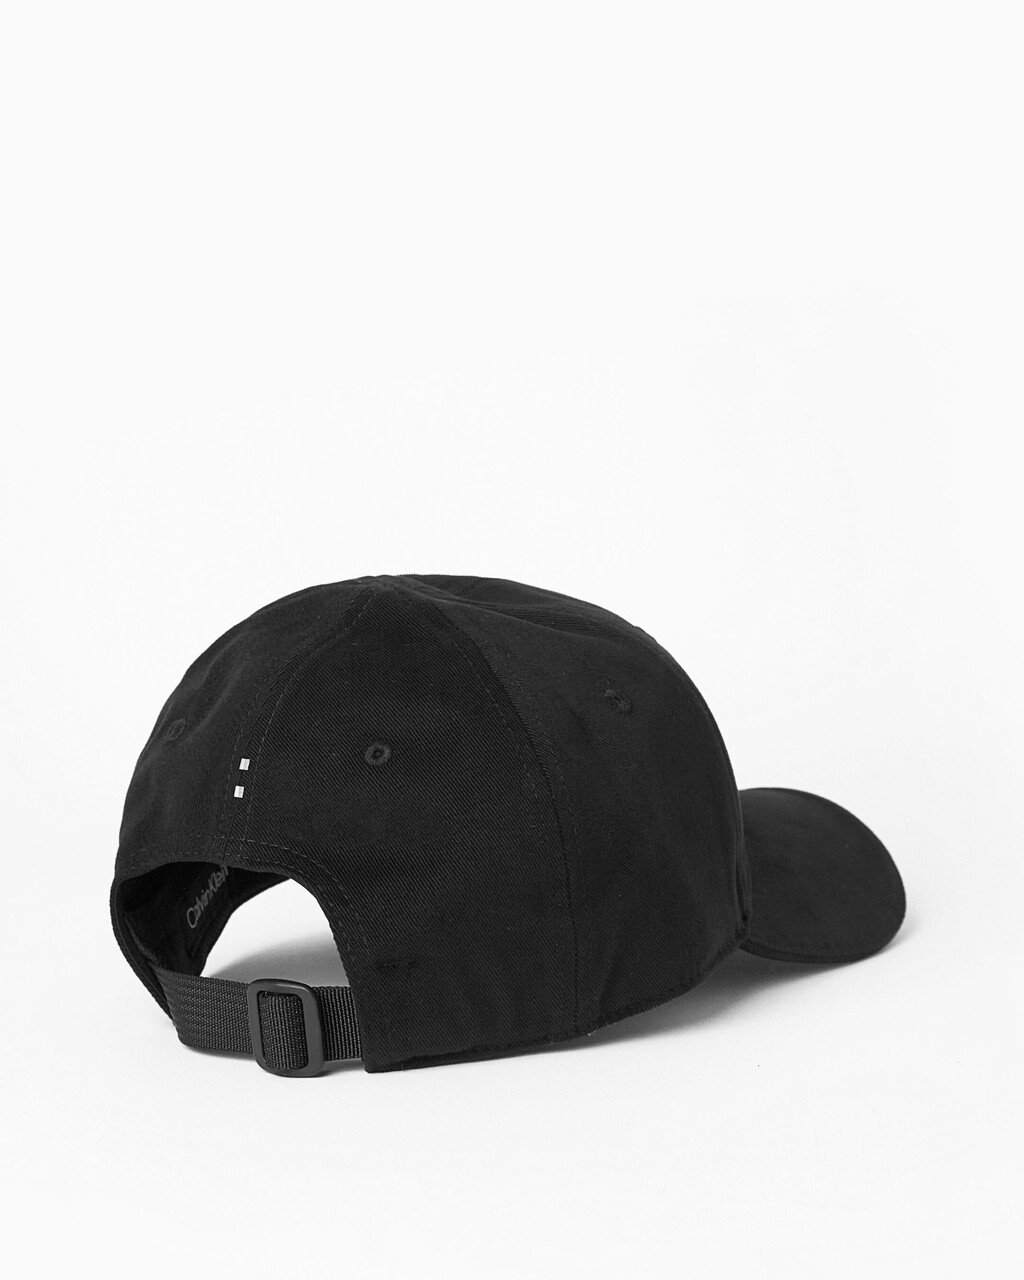 ATHLETIC ICON 棒球帽, BLACK, hi-res